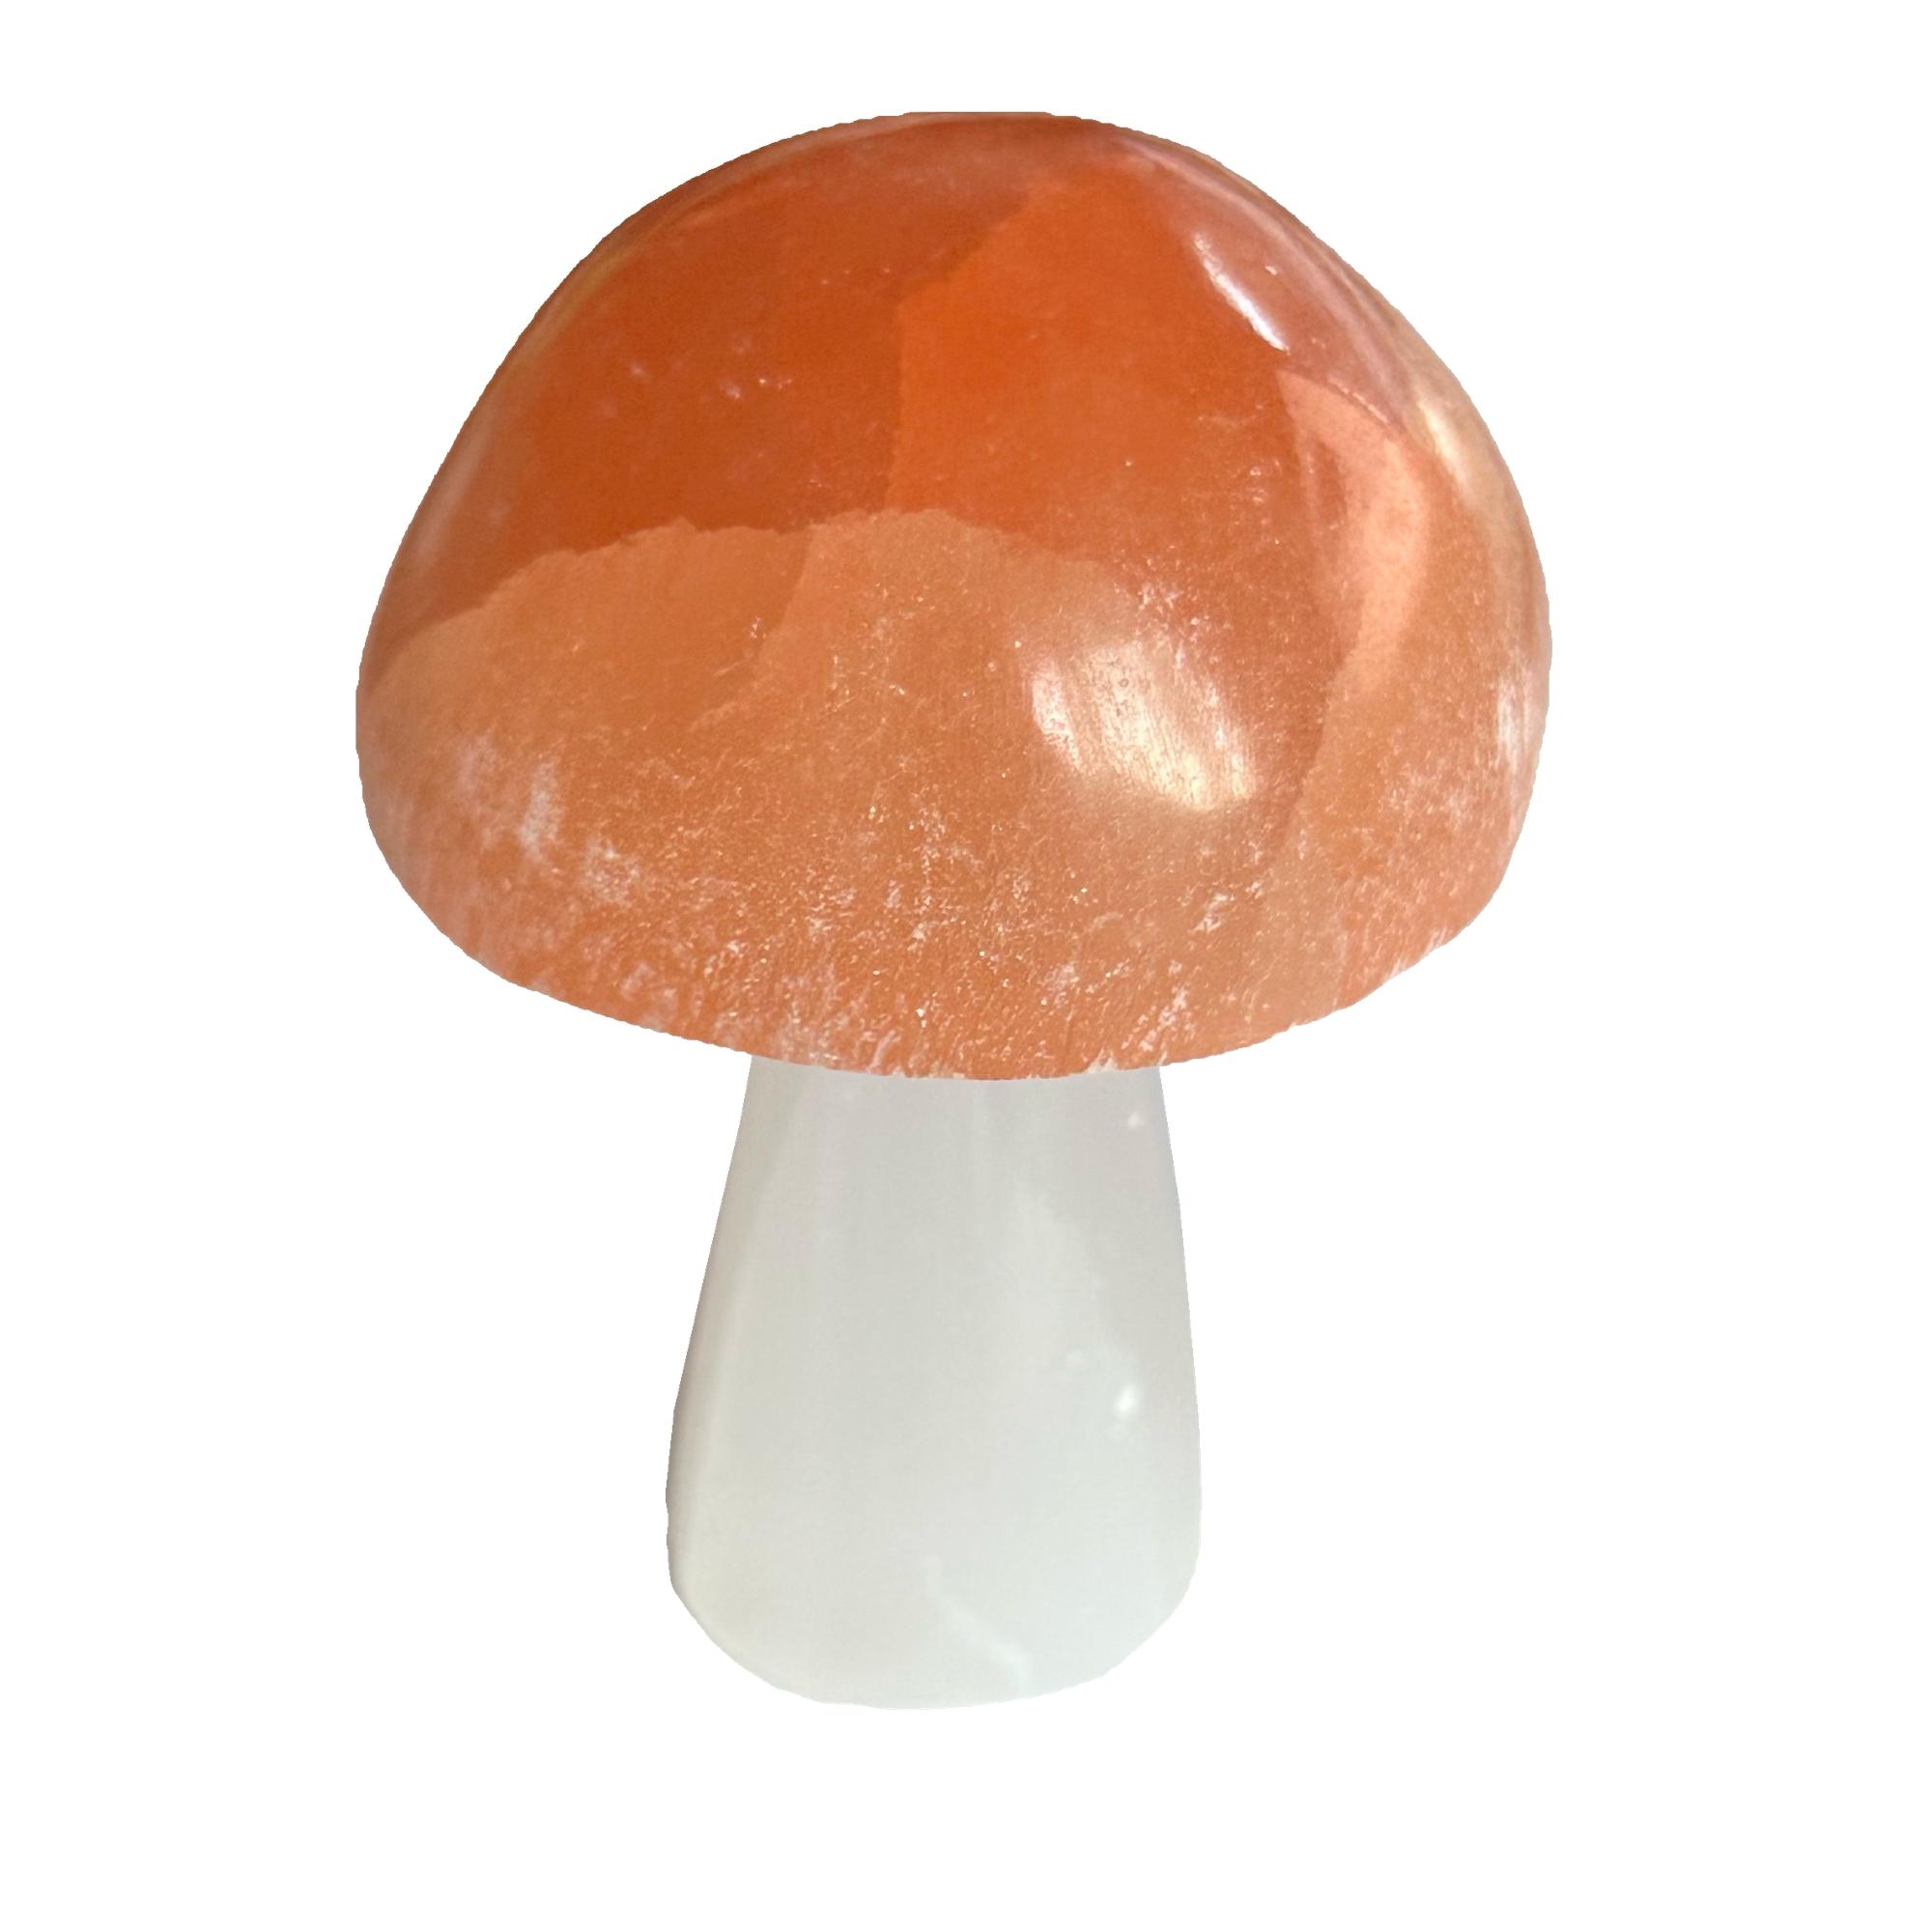 Selenite Mushroom, Orange selenite top, white selenite stem Prehistoric Online